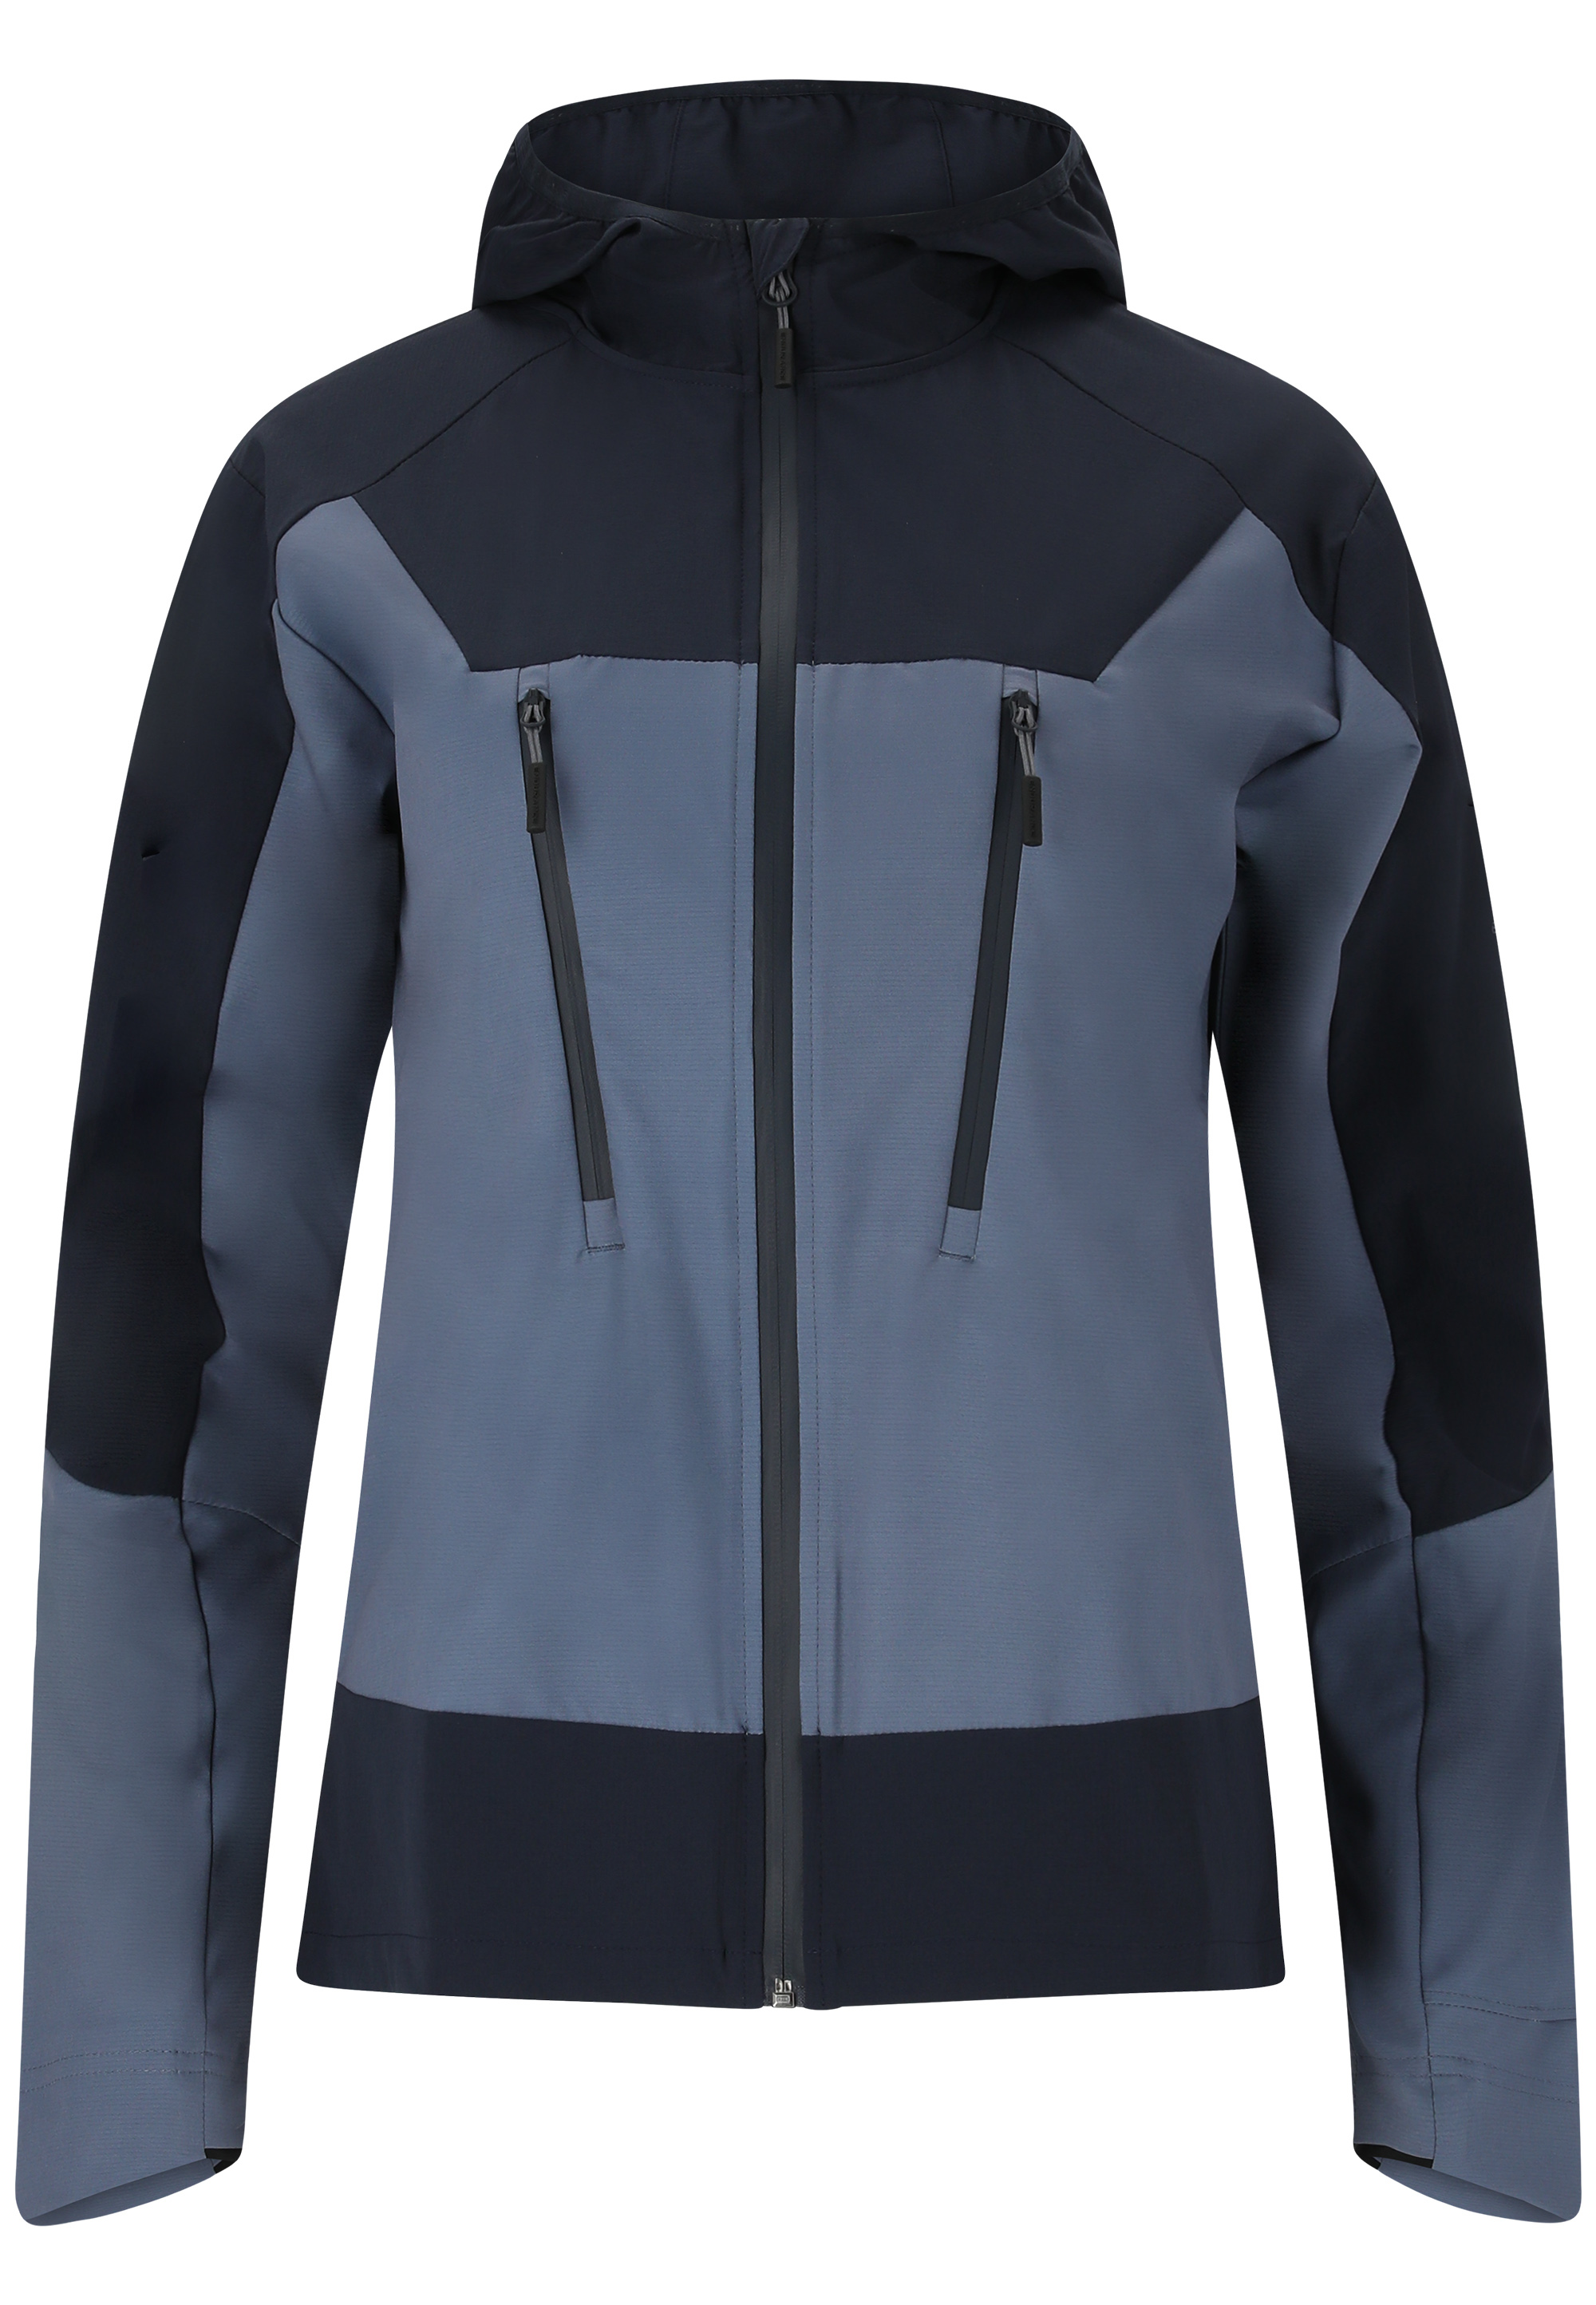 Спортивная куртка Endurance Telly , цвет 2101 Dark Sapphire шорты endurance grovent цвет 2101 dark sapphire